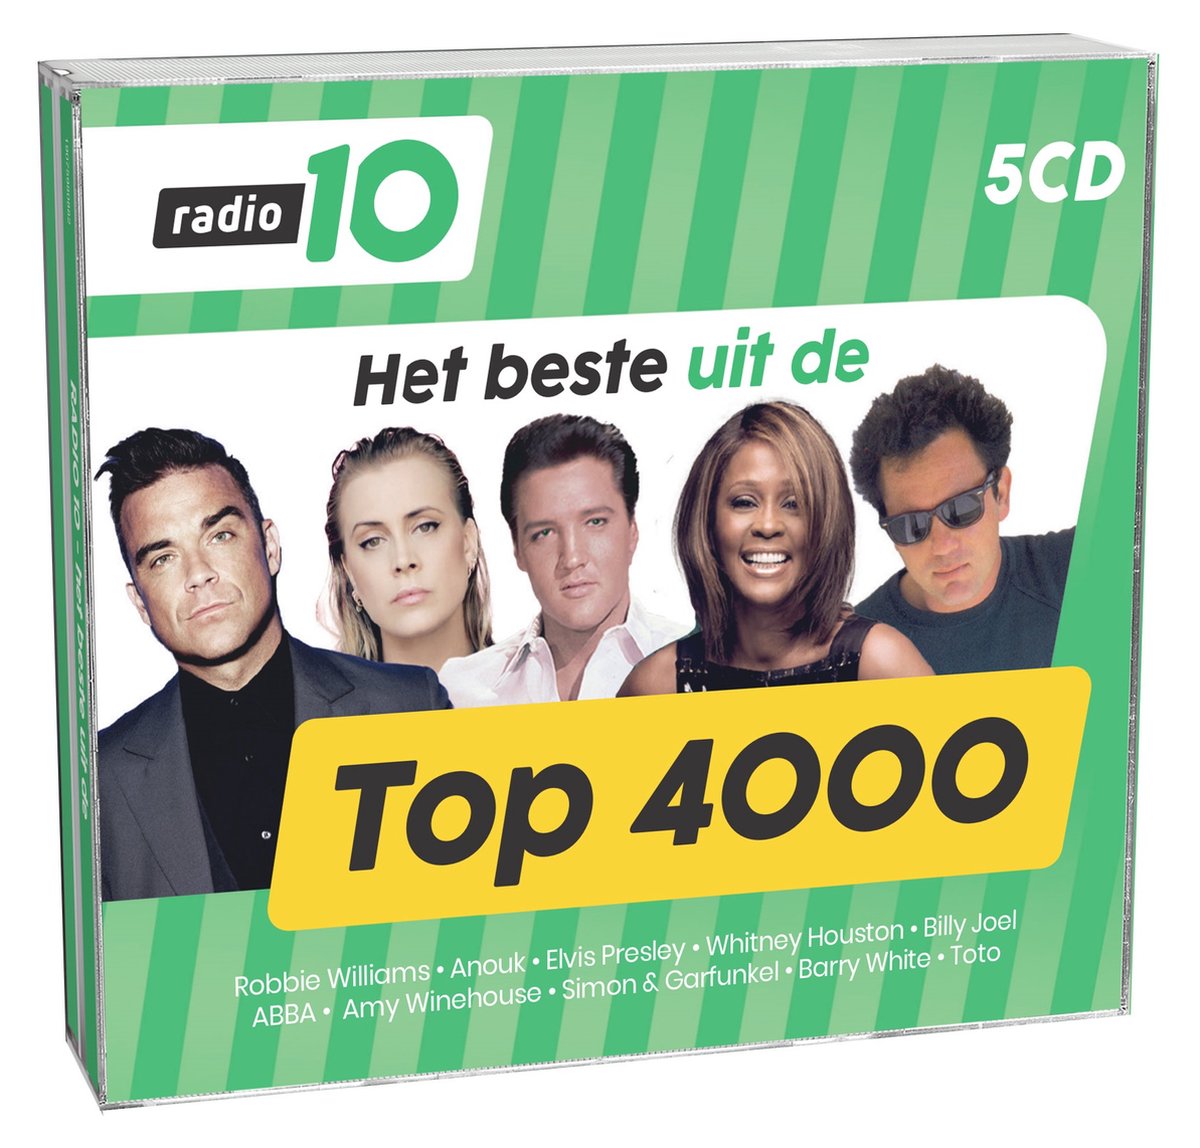 Het Beste Uit Radio 10 Top 4000 - V/a